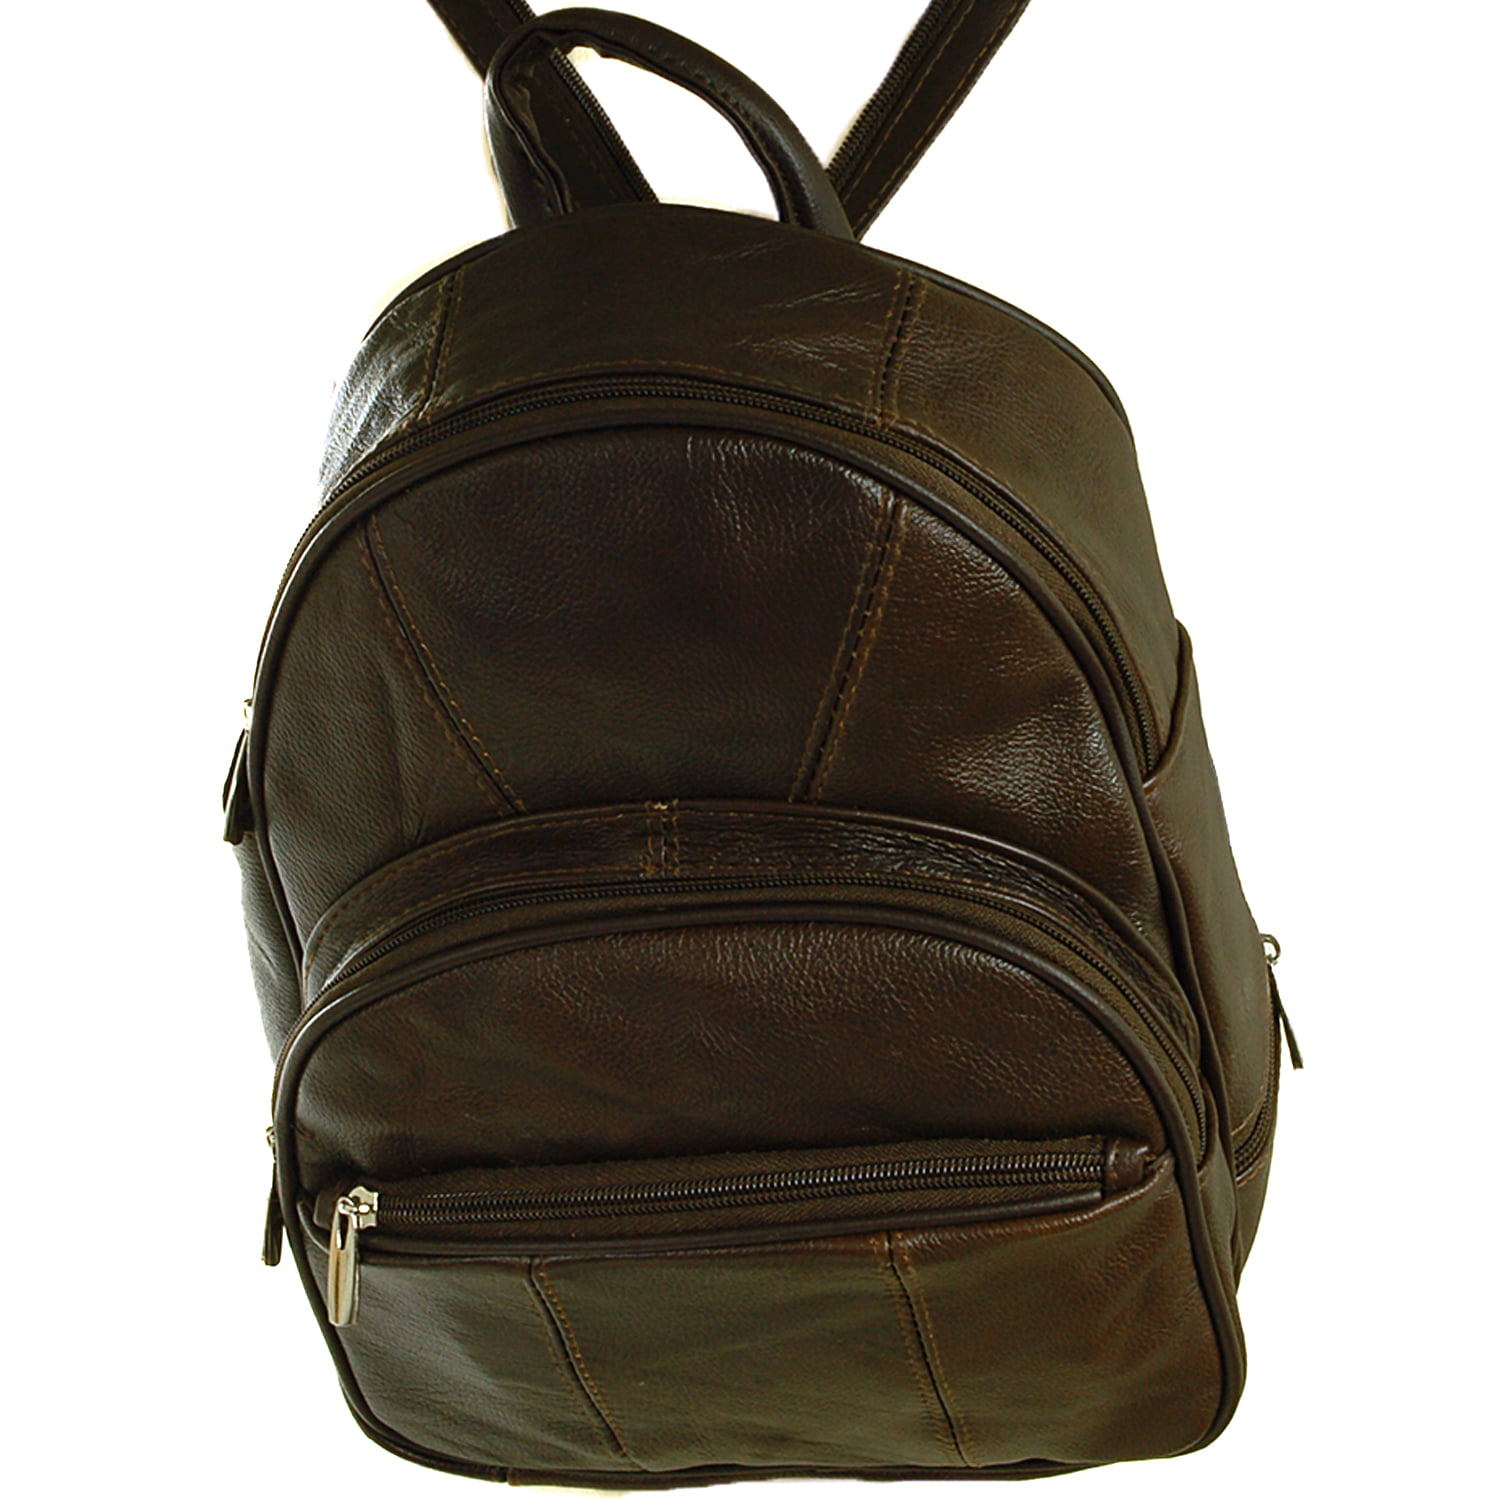 New Leather Backpack Purse Sling Bag Back Pack Shoulder Handbag Organizer Pocket 